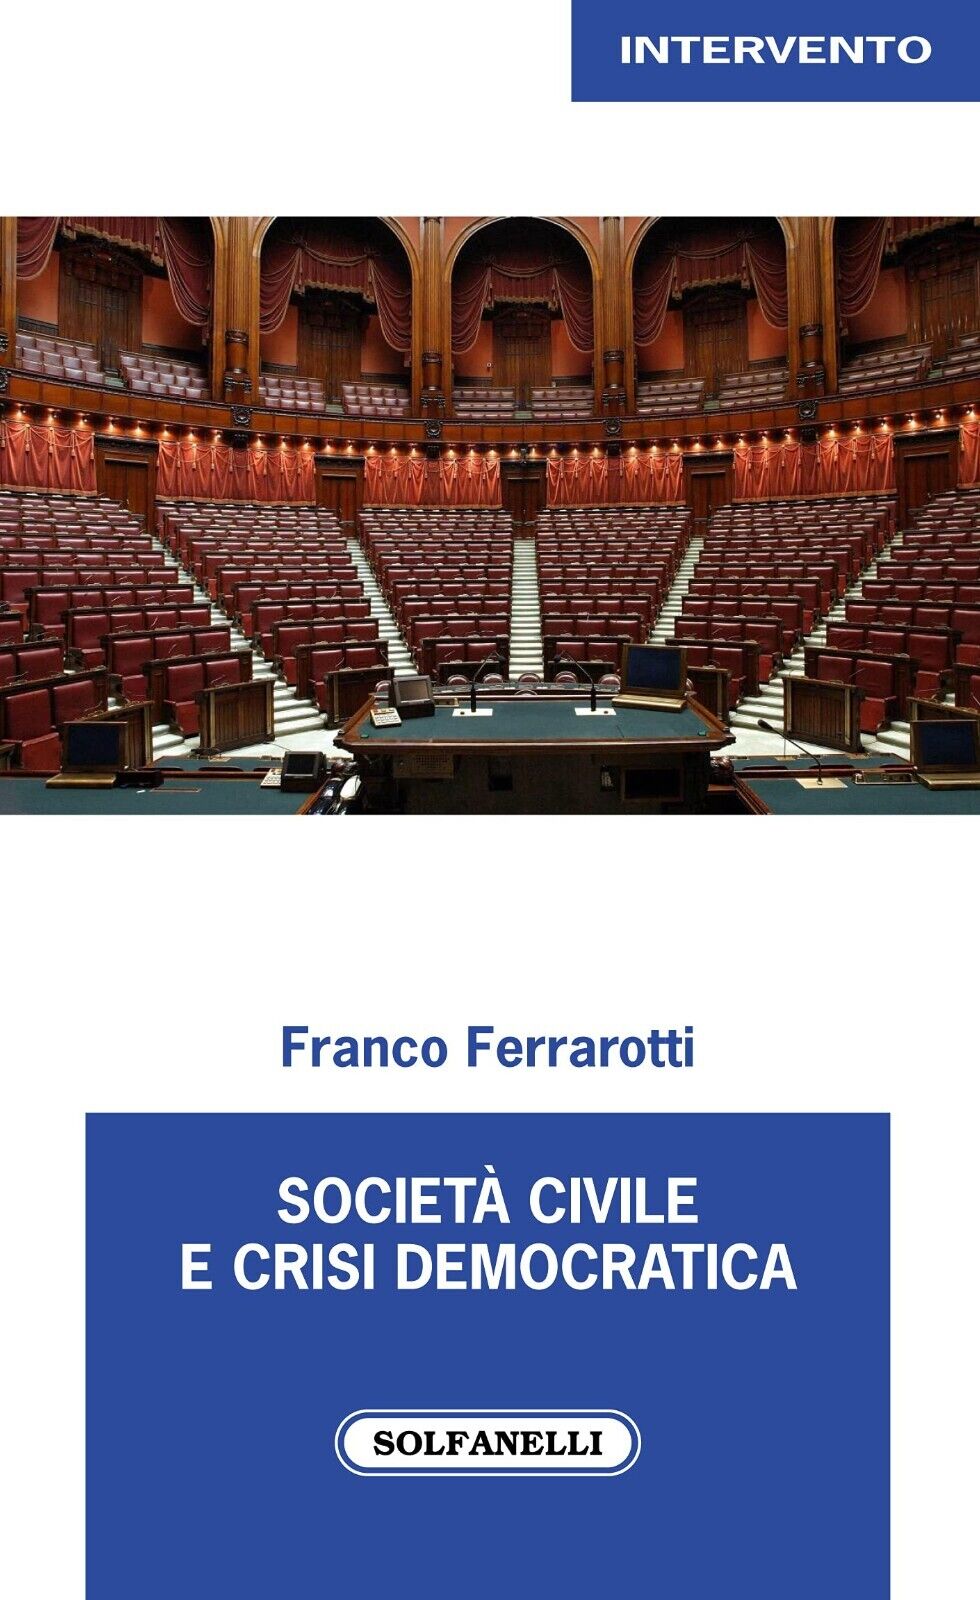 Societ? civile e crisi democratica di Franco Ferrarotti, 2021, Solfanelli libro usato